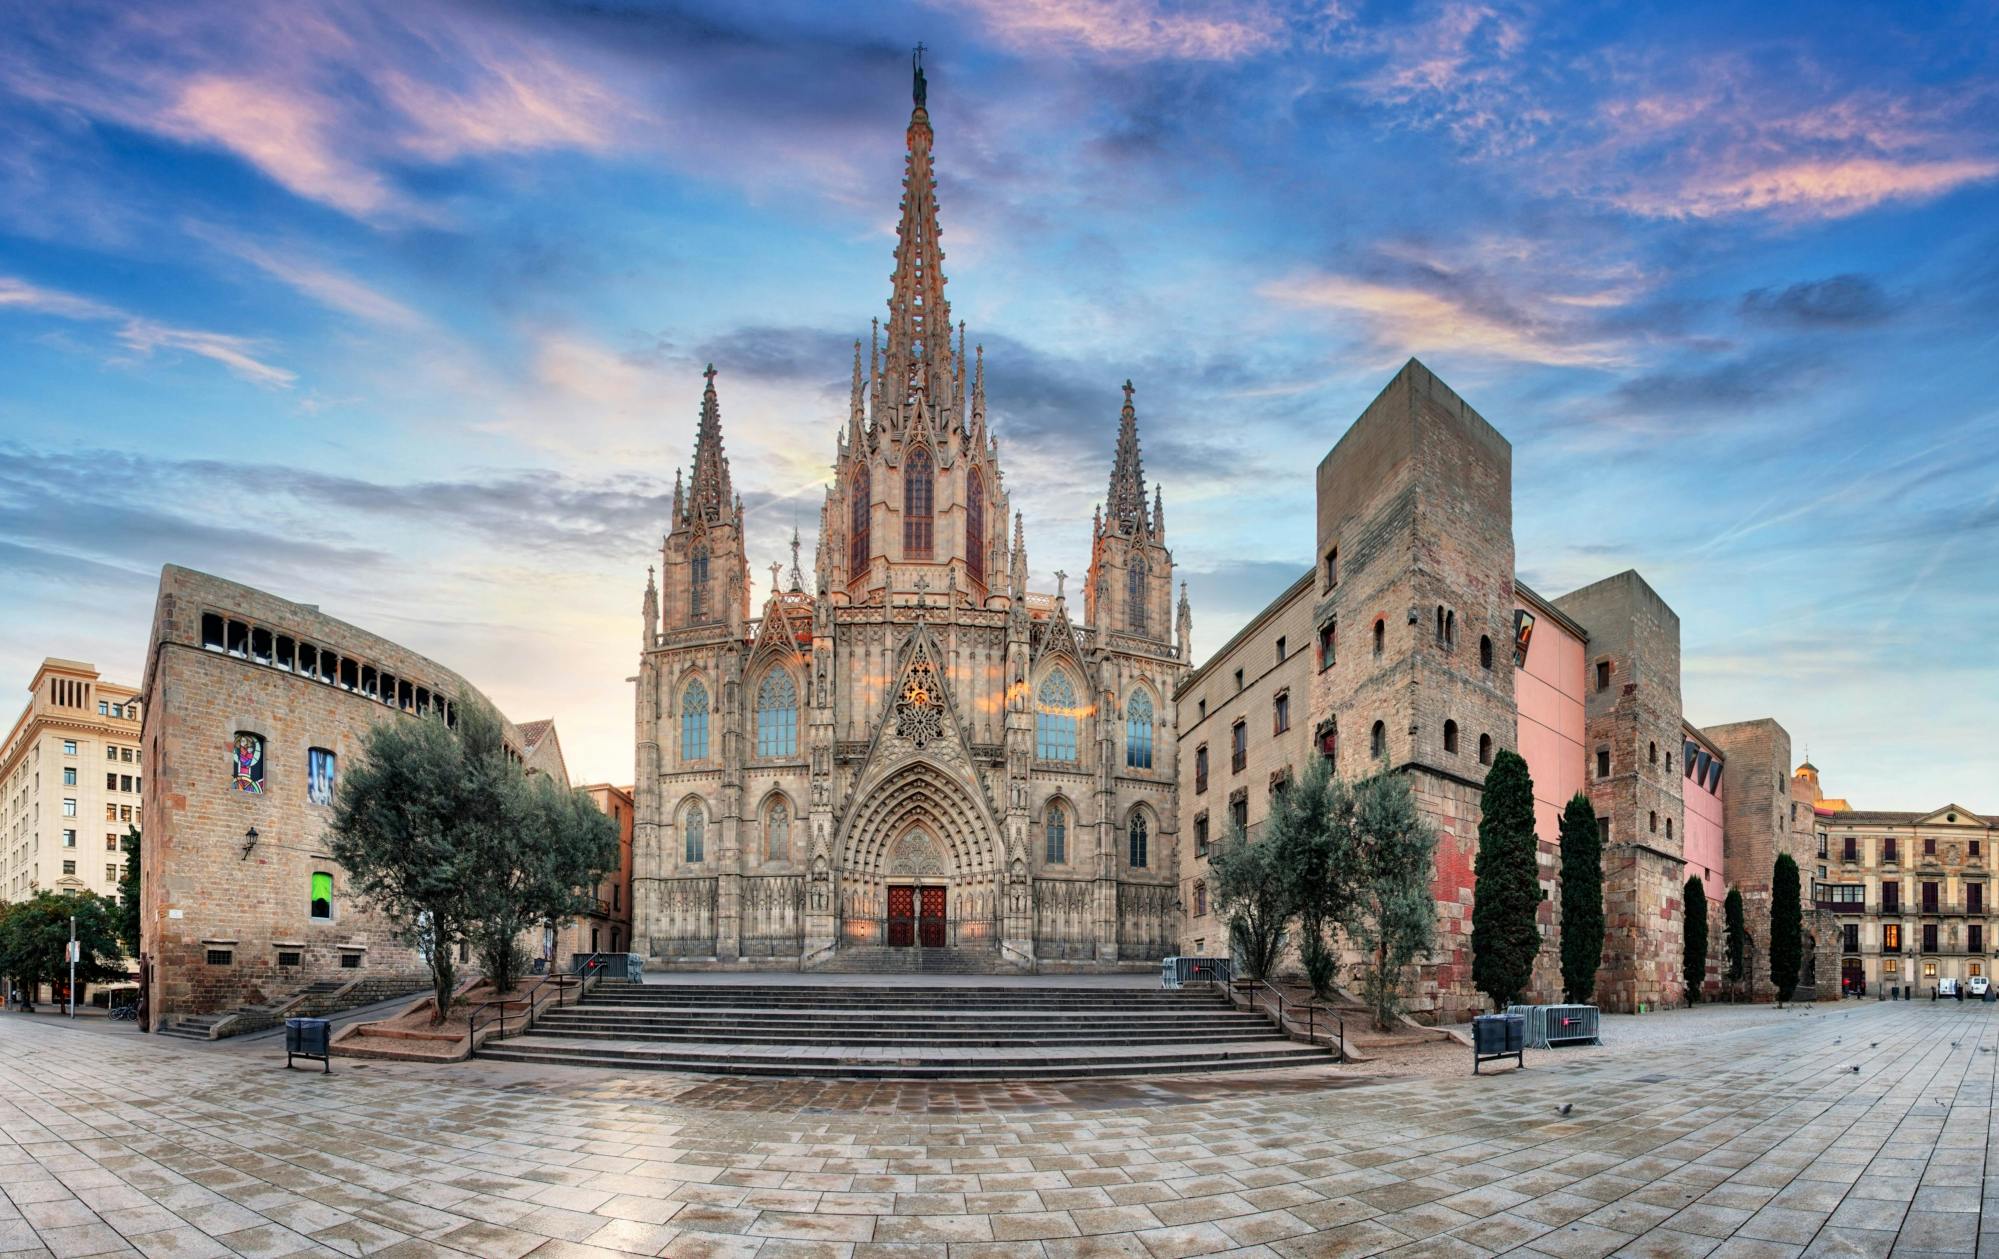 Entrada a la catedral de Barcelona con audio tour gratuito por la ciudad